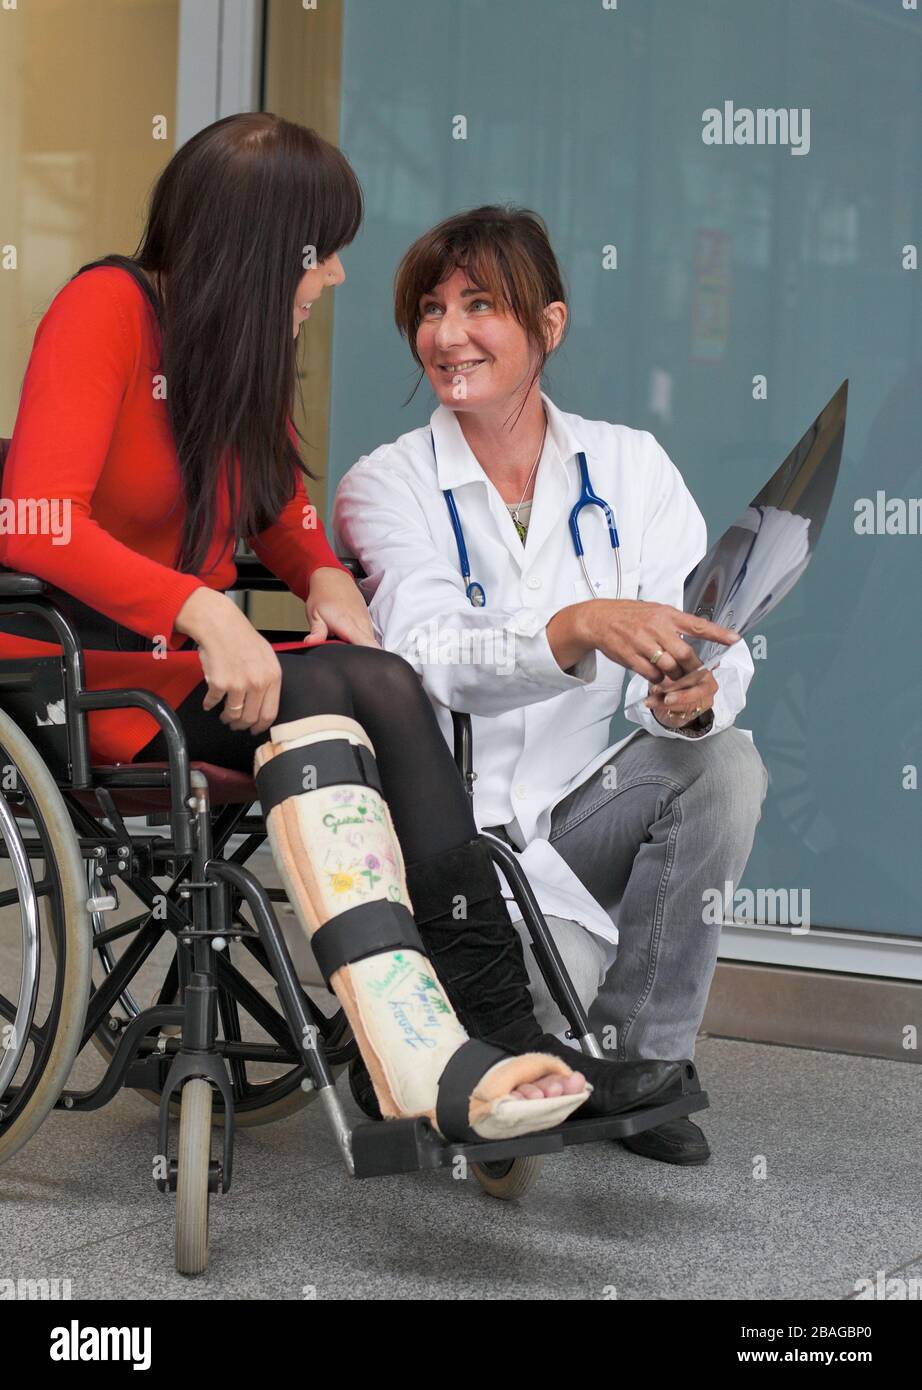 Junge Frau mit Gipsbein sitzt im Rollstuhl, MR: Si, Aerztin versorgt. sie, Foto Stock